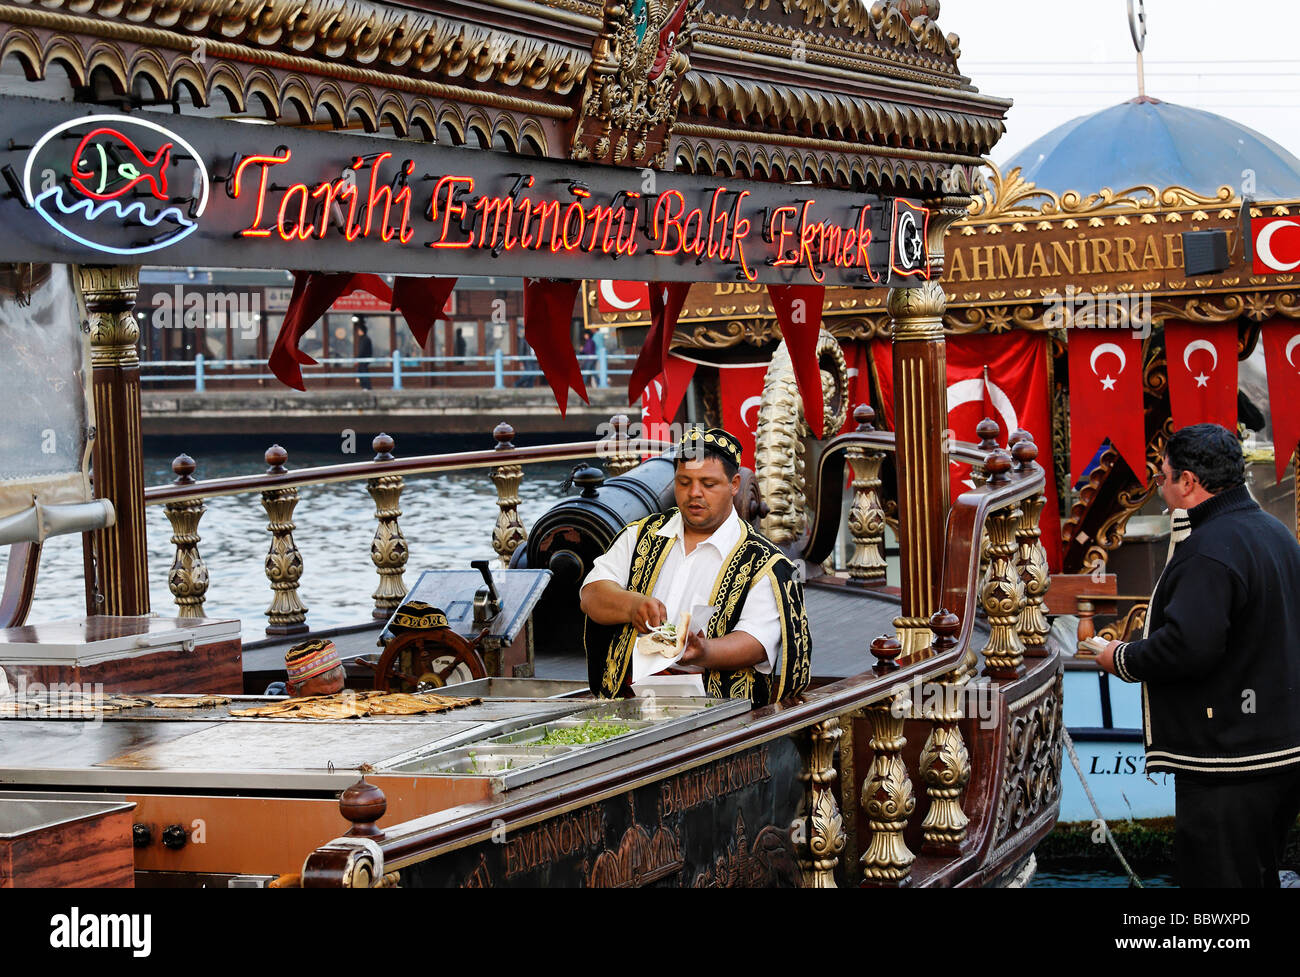 Türke im traditionellen Kostüm Vorbereitung Fischbrötchen auf einem historisch eingerichteten Boot, Goldenes Horn, Eminoenue, Istanbul, Türkei Stockfoto